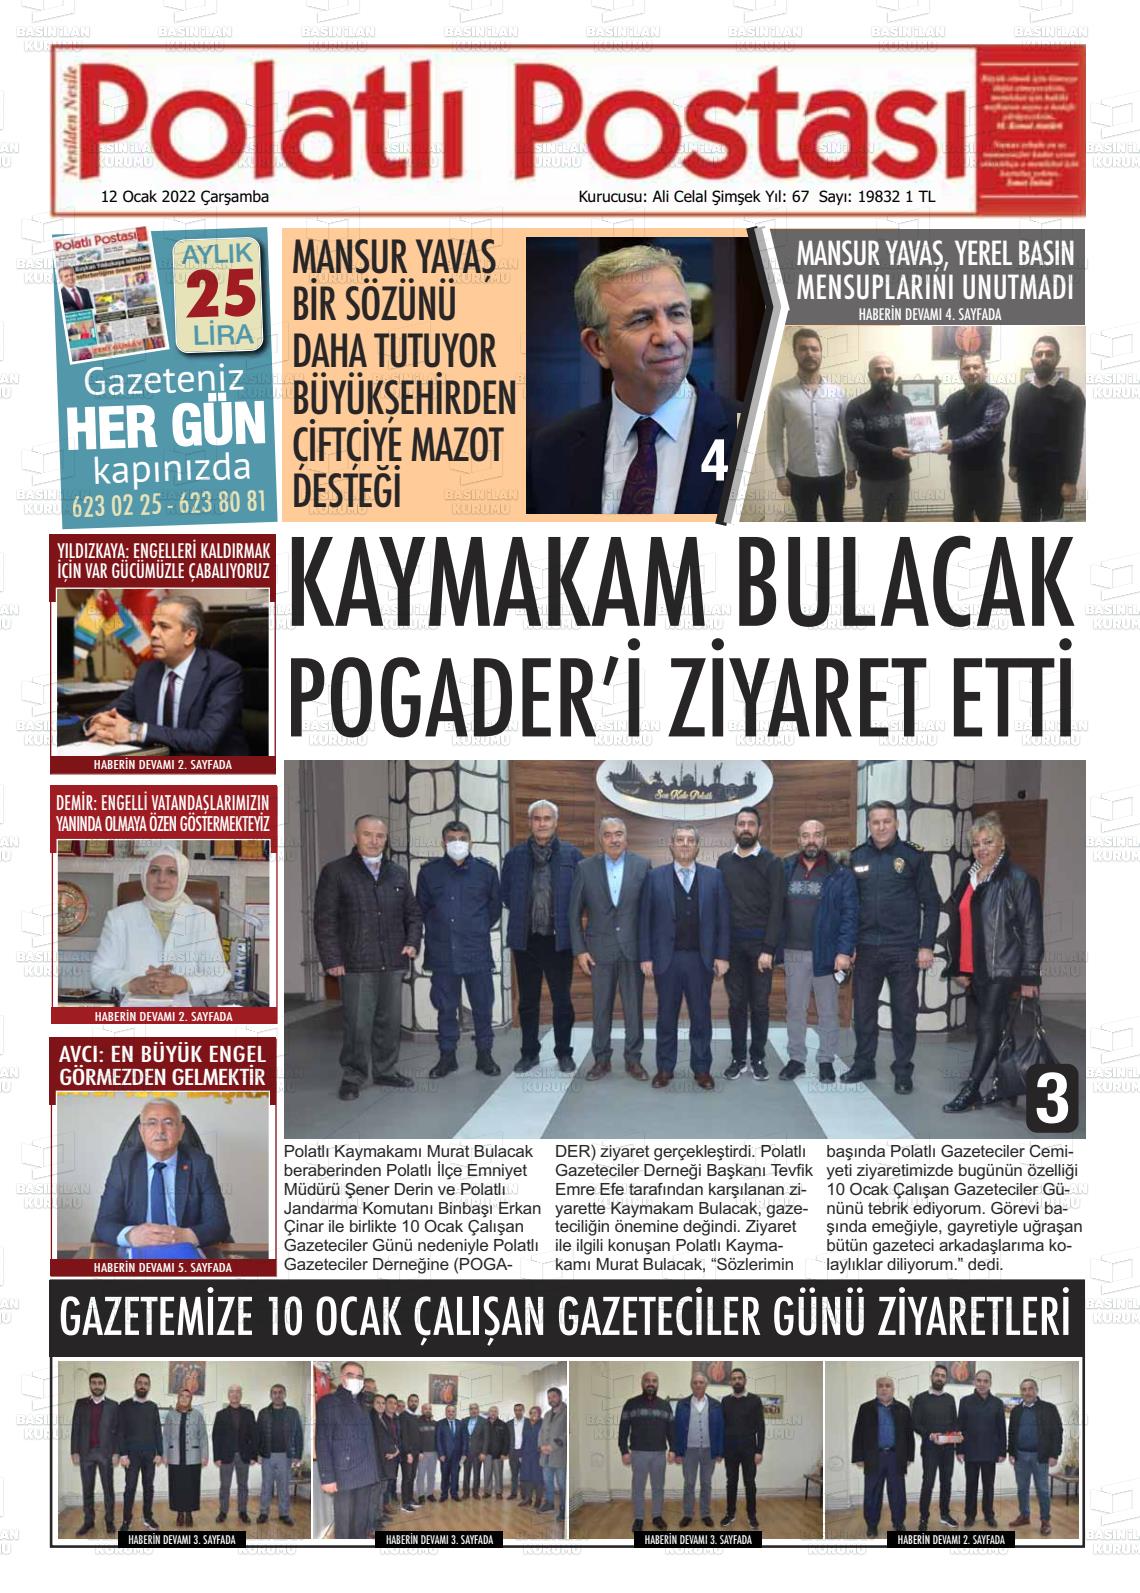 12 Ocak 2022 Polatlı Postası Gazete Manşeti